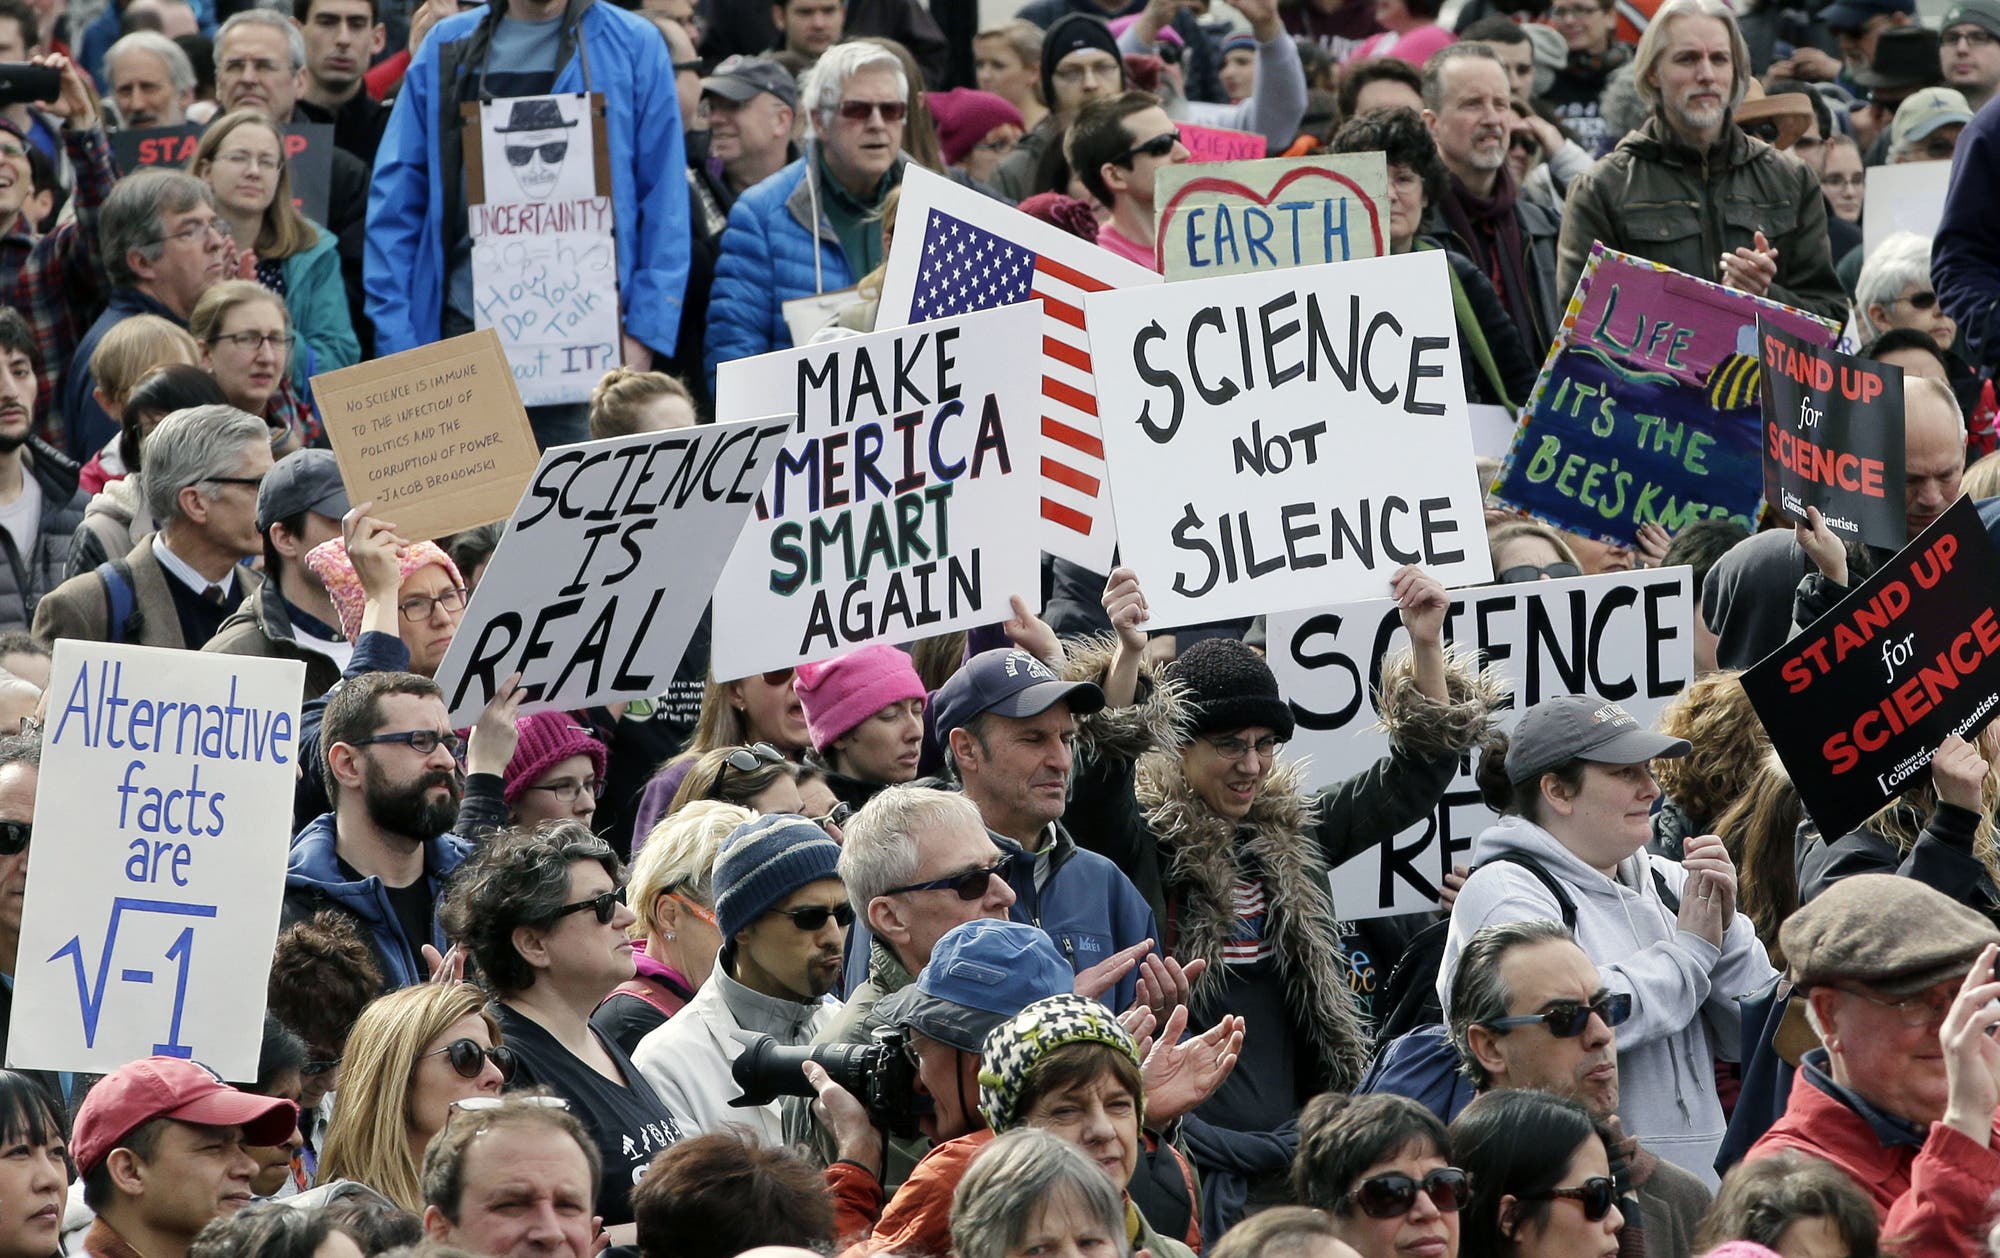 Trump-Gegner demonstrieren in den USA für die Wissenschaft